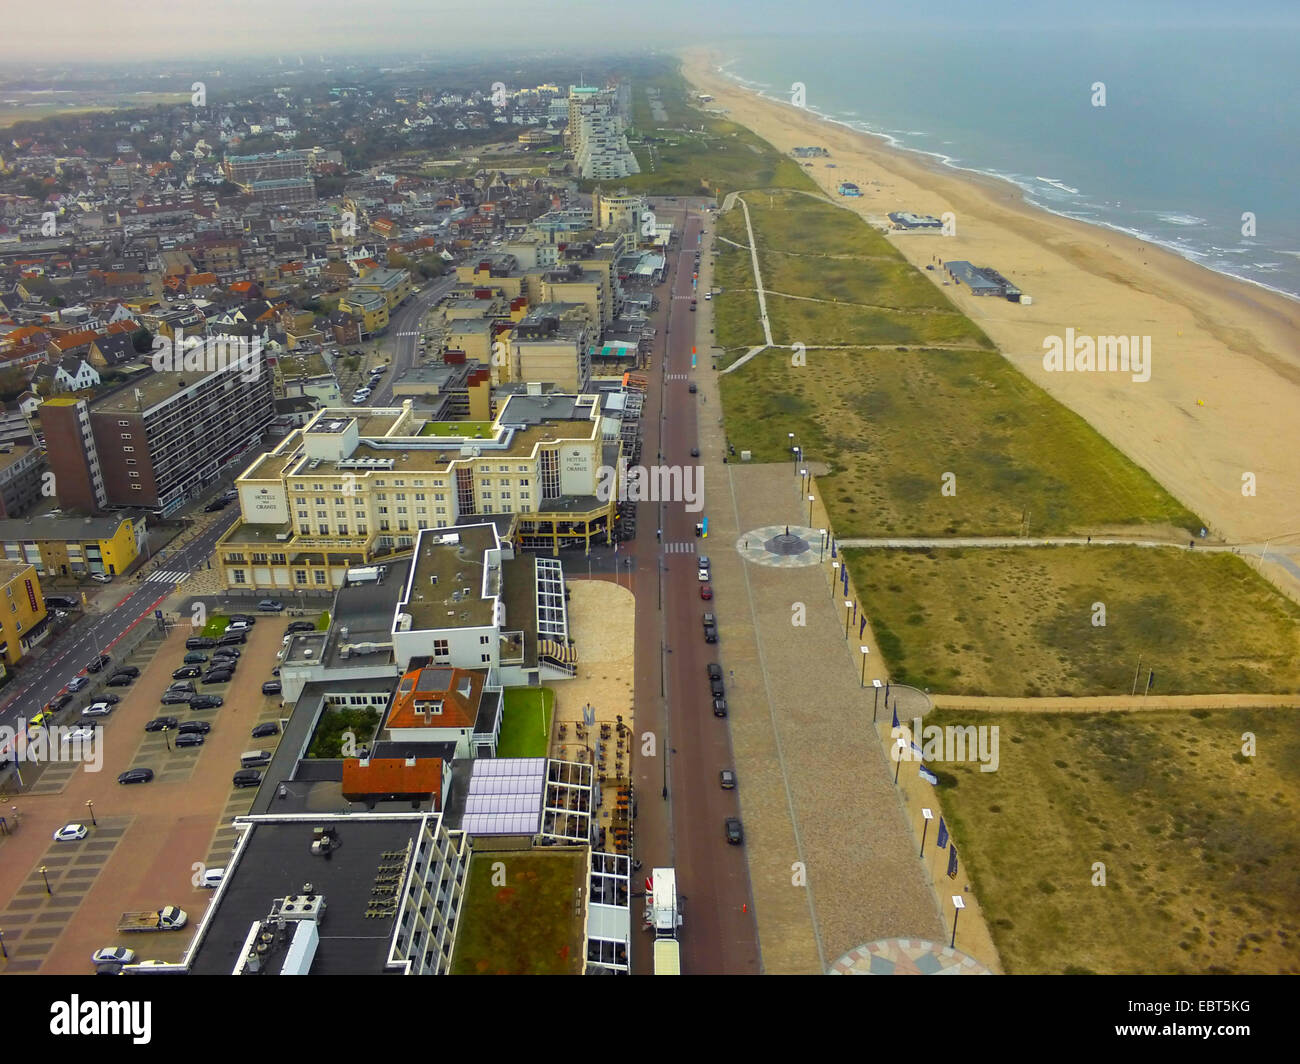 aerial view to coastal resort, grass-grown dunes and sandy beach, Netherlands, Noordwijk aan Zee Stock Photo